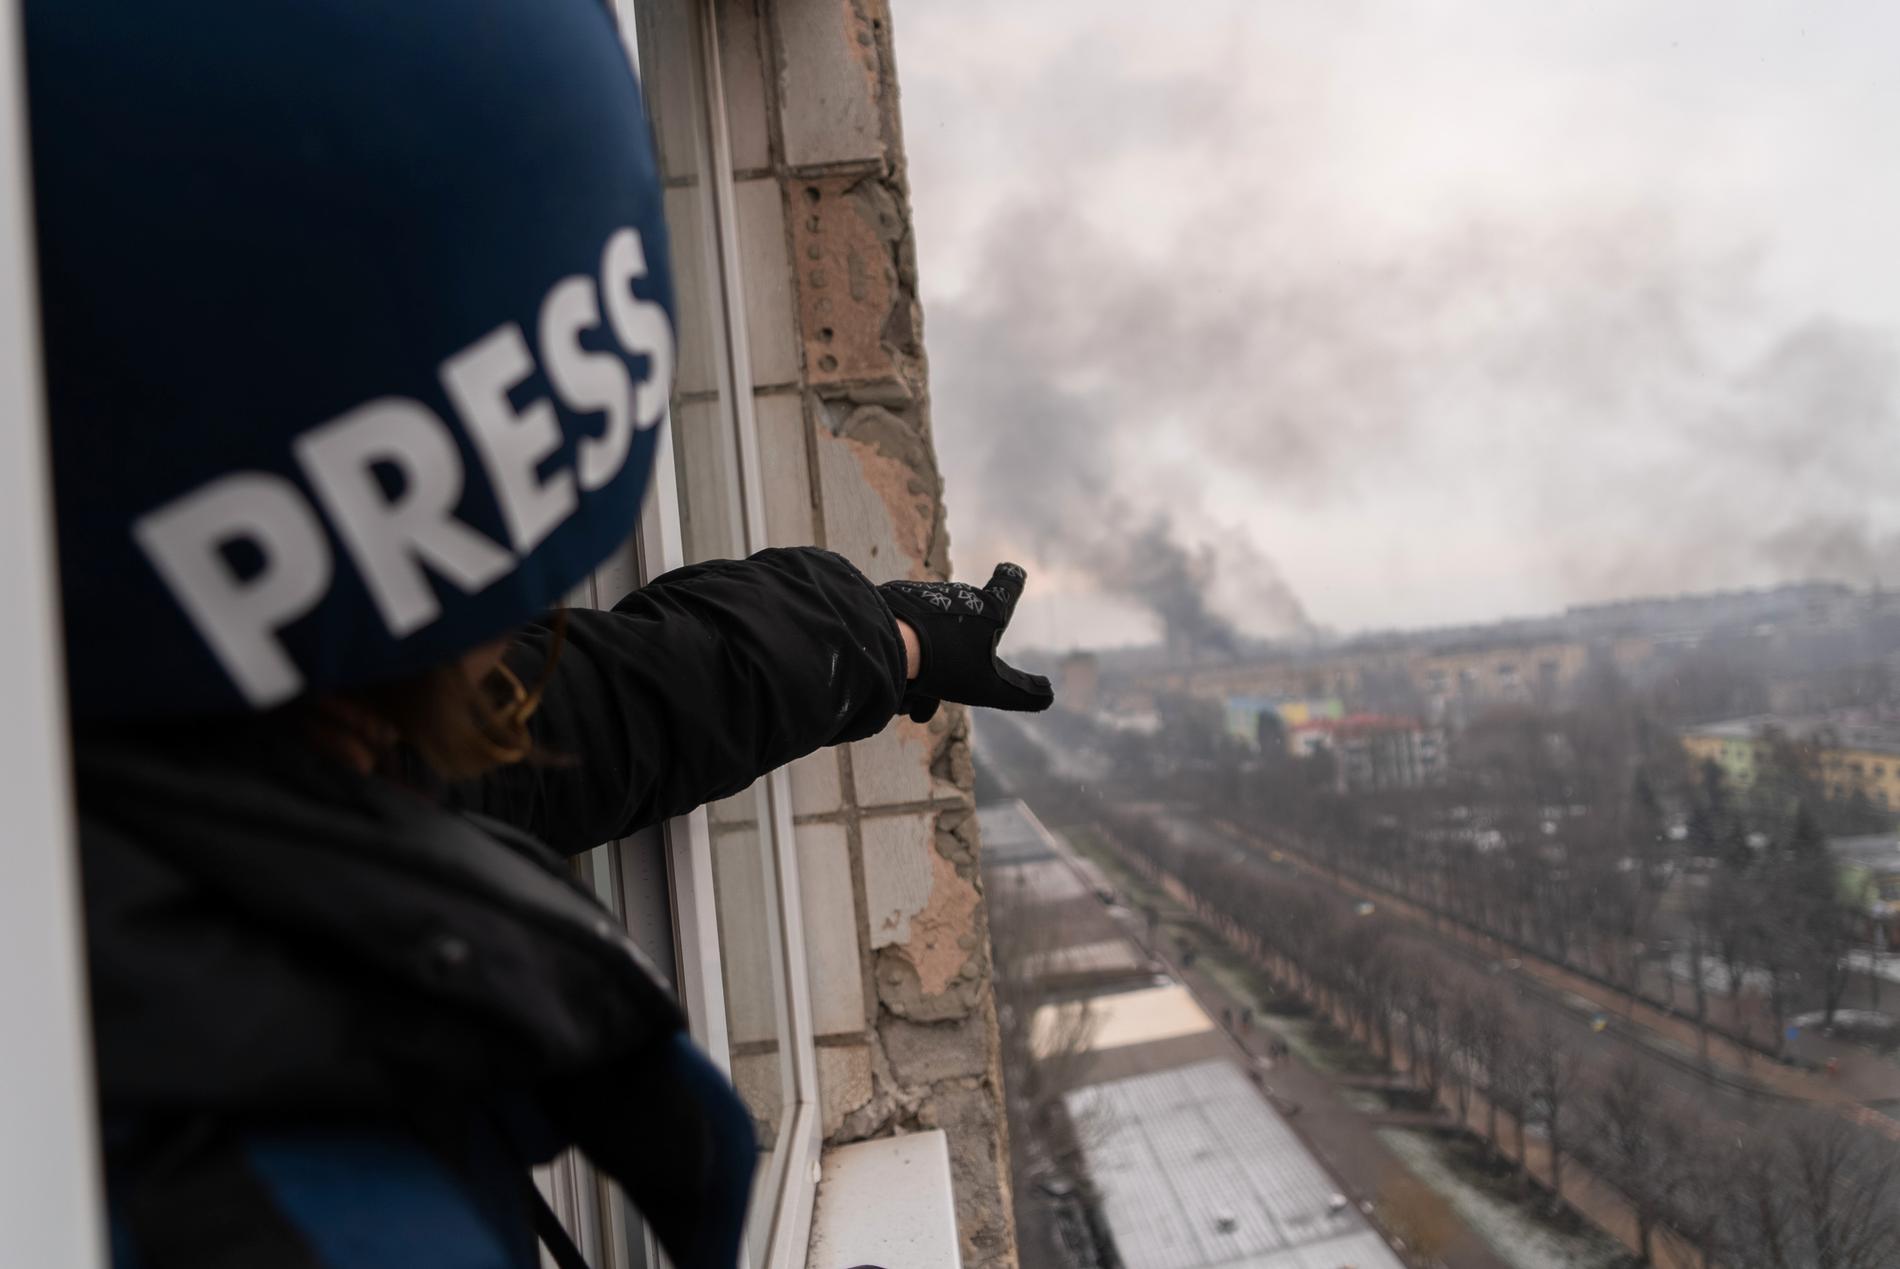 Fotografen Evgeniy Maloletka pekar mot röken som stiger från förlossningssjukhuset som bombades i ett ryskt flyganfall, den 9 mars 2022. Bild från filmen “20 Days in Mariupol.”     